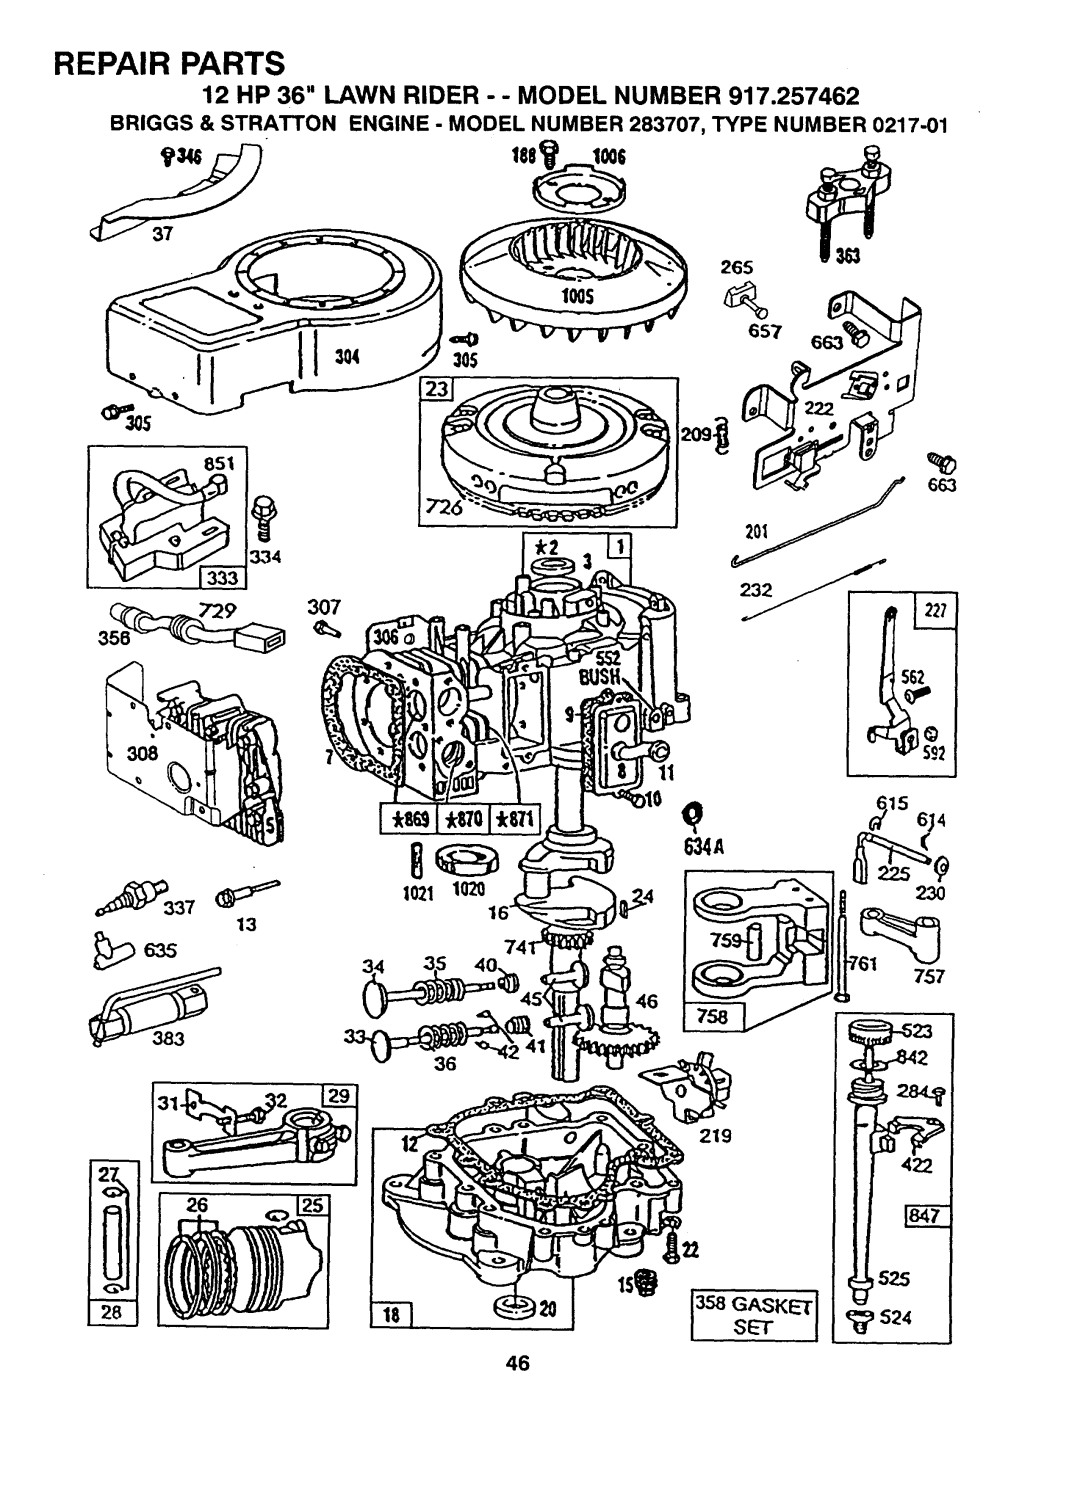 Sears 917.257462 manual 219 422, Repair Parts, 12 HP 36 LAWN RIDER - - MODEL NUMBER 